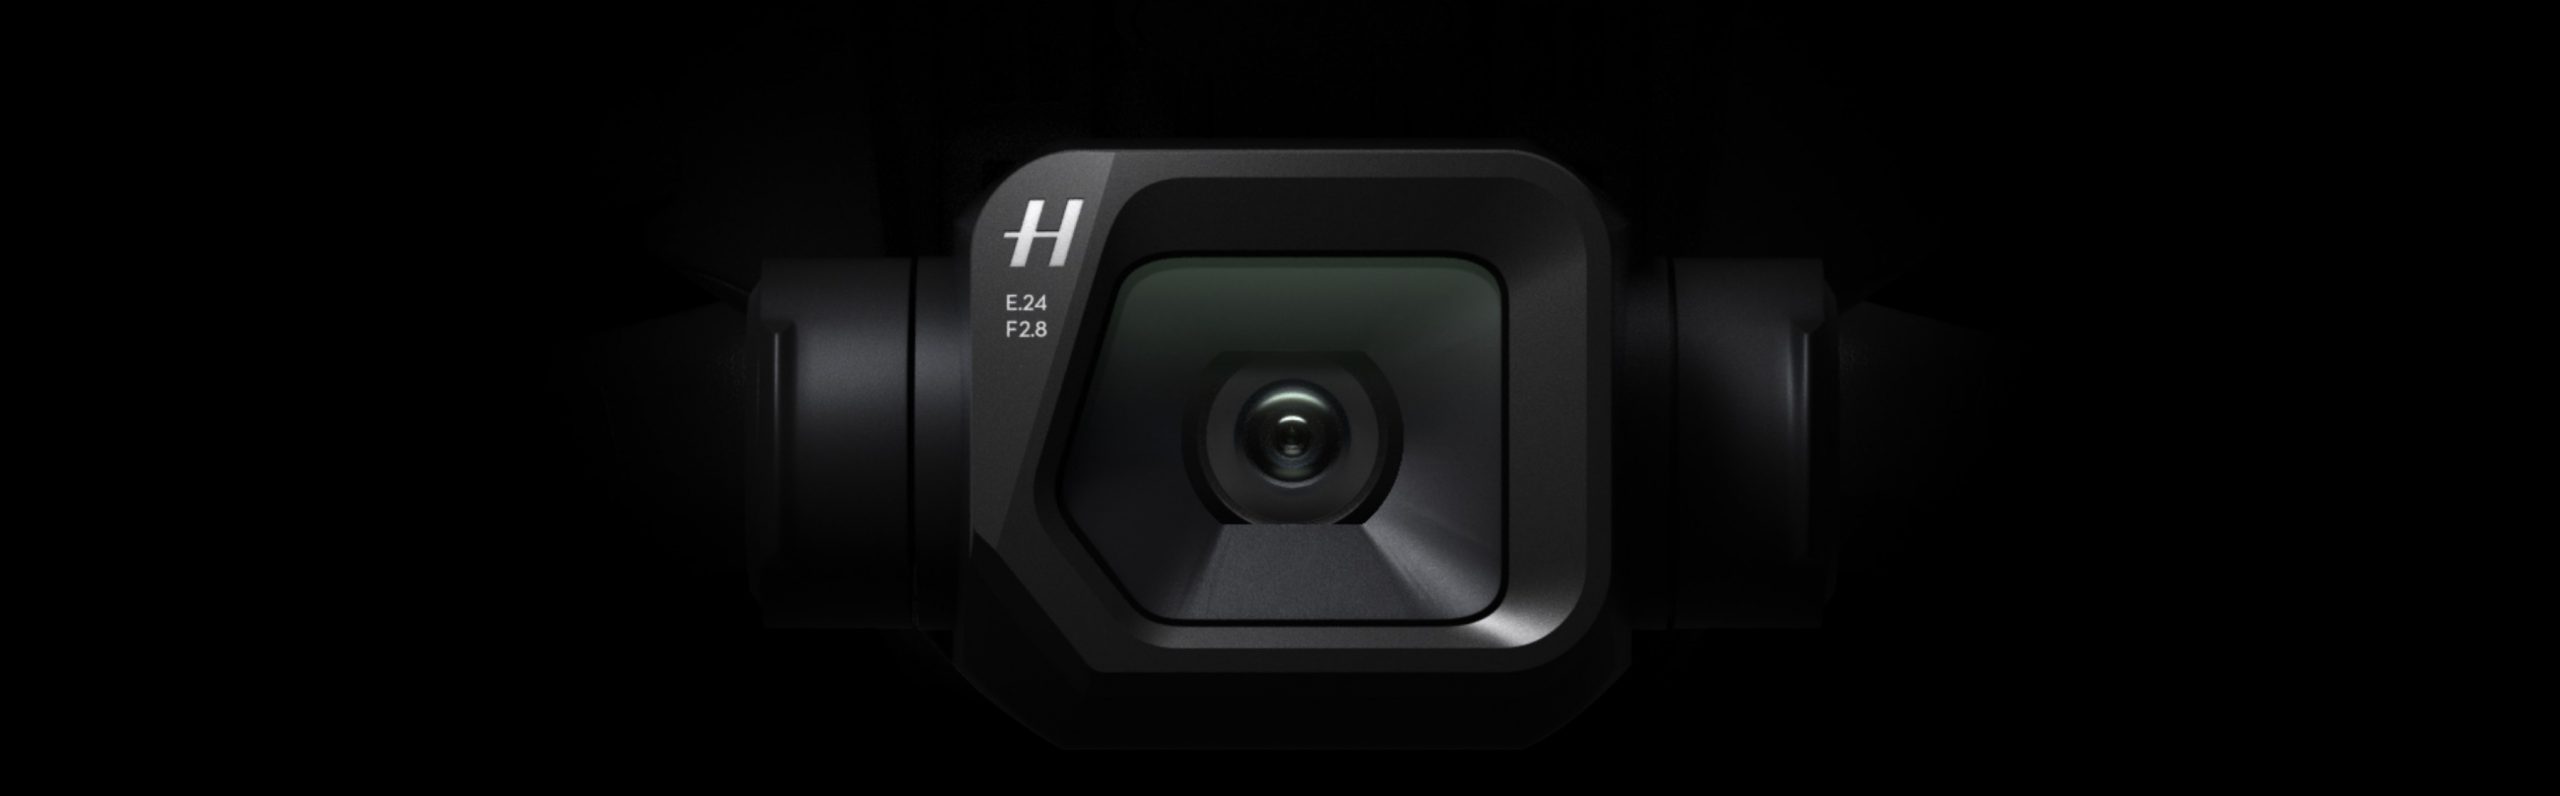 DJI Mavic 3, dron con cámara Hasselblad 4/3 CMOS, video de 5.1K, detección  de obstáculos omnidireccional, vuelo de 46 minutos, retorno automático